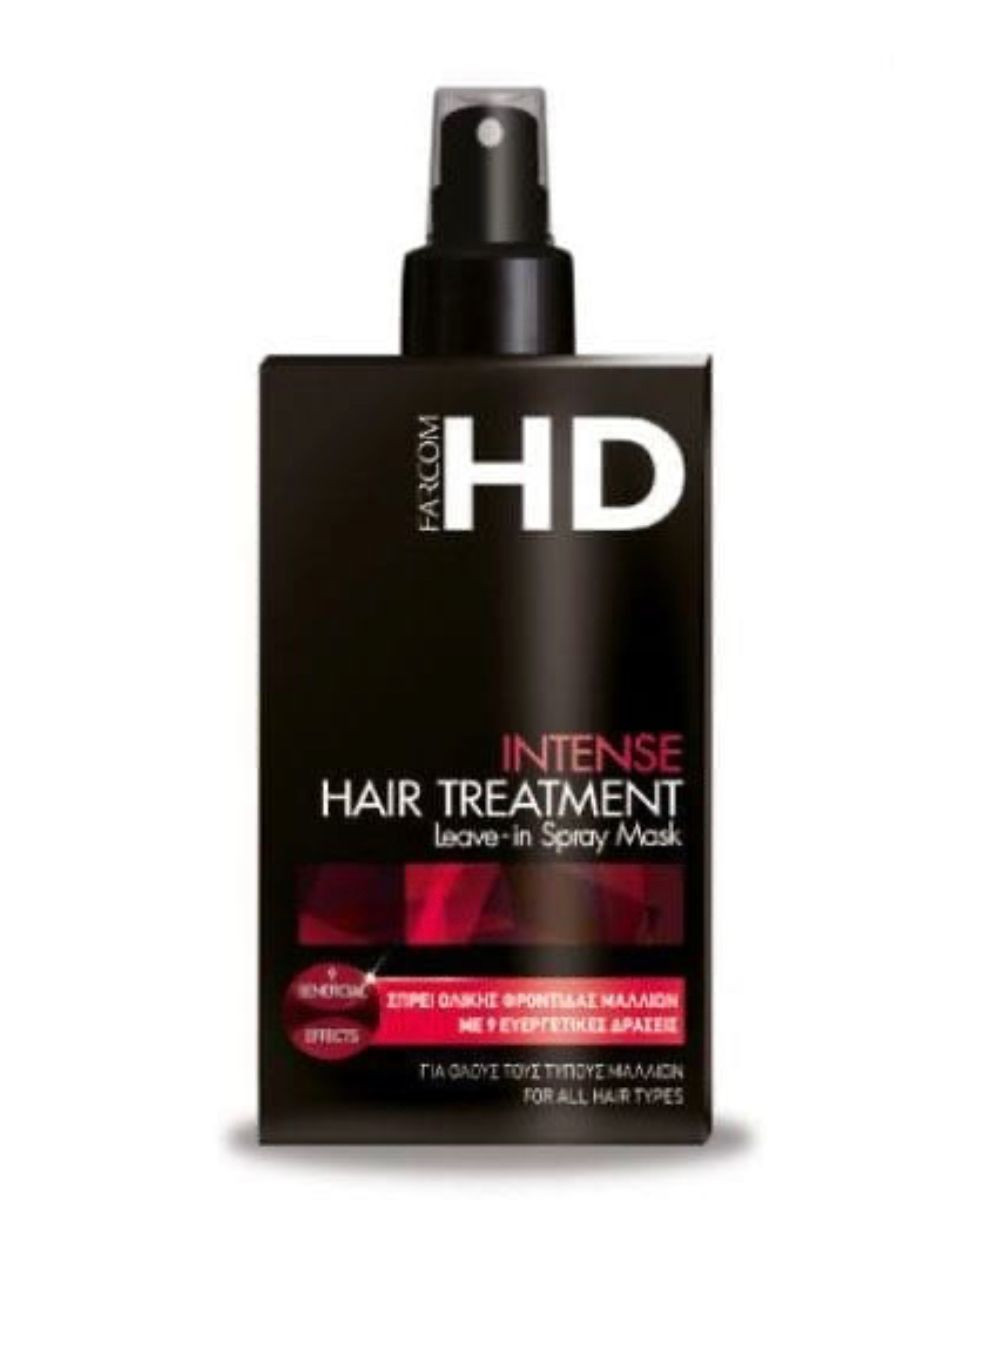 מסיכת ספריי לטיפול אינטנסיבי 150 מל Intense Hair Treatment Leave-in Spray Mask - 150 ml